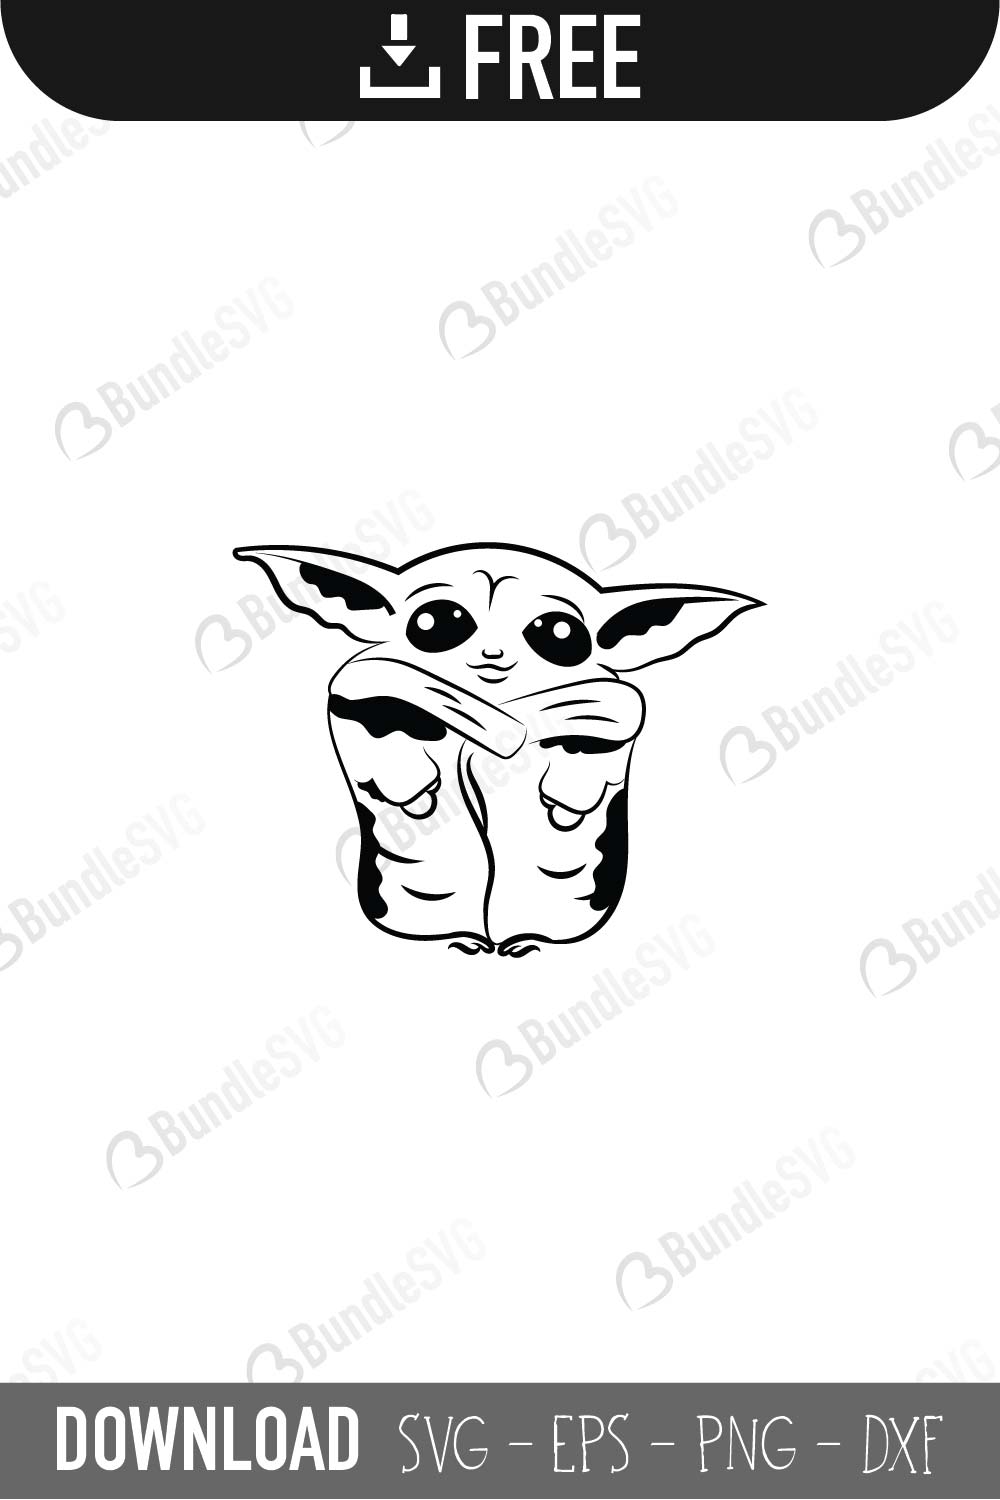 Download Baby Yoda SVG Cut Files | BundleSVG